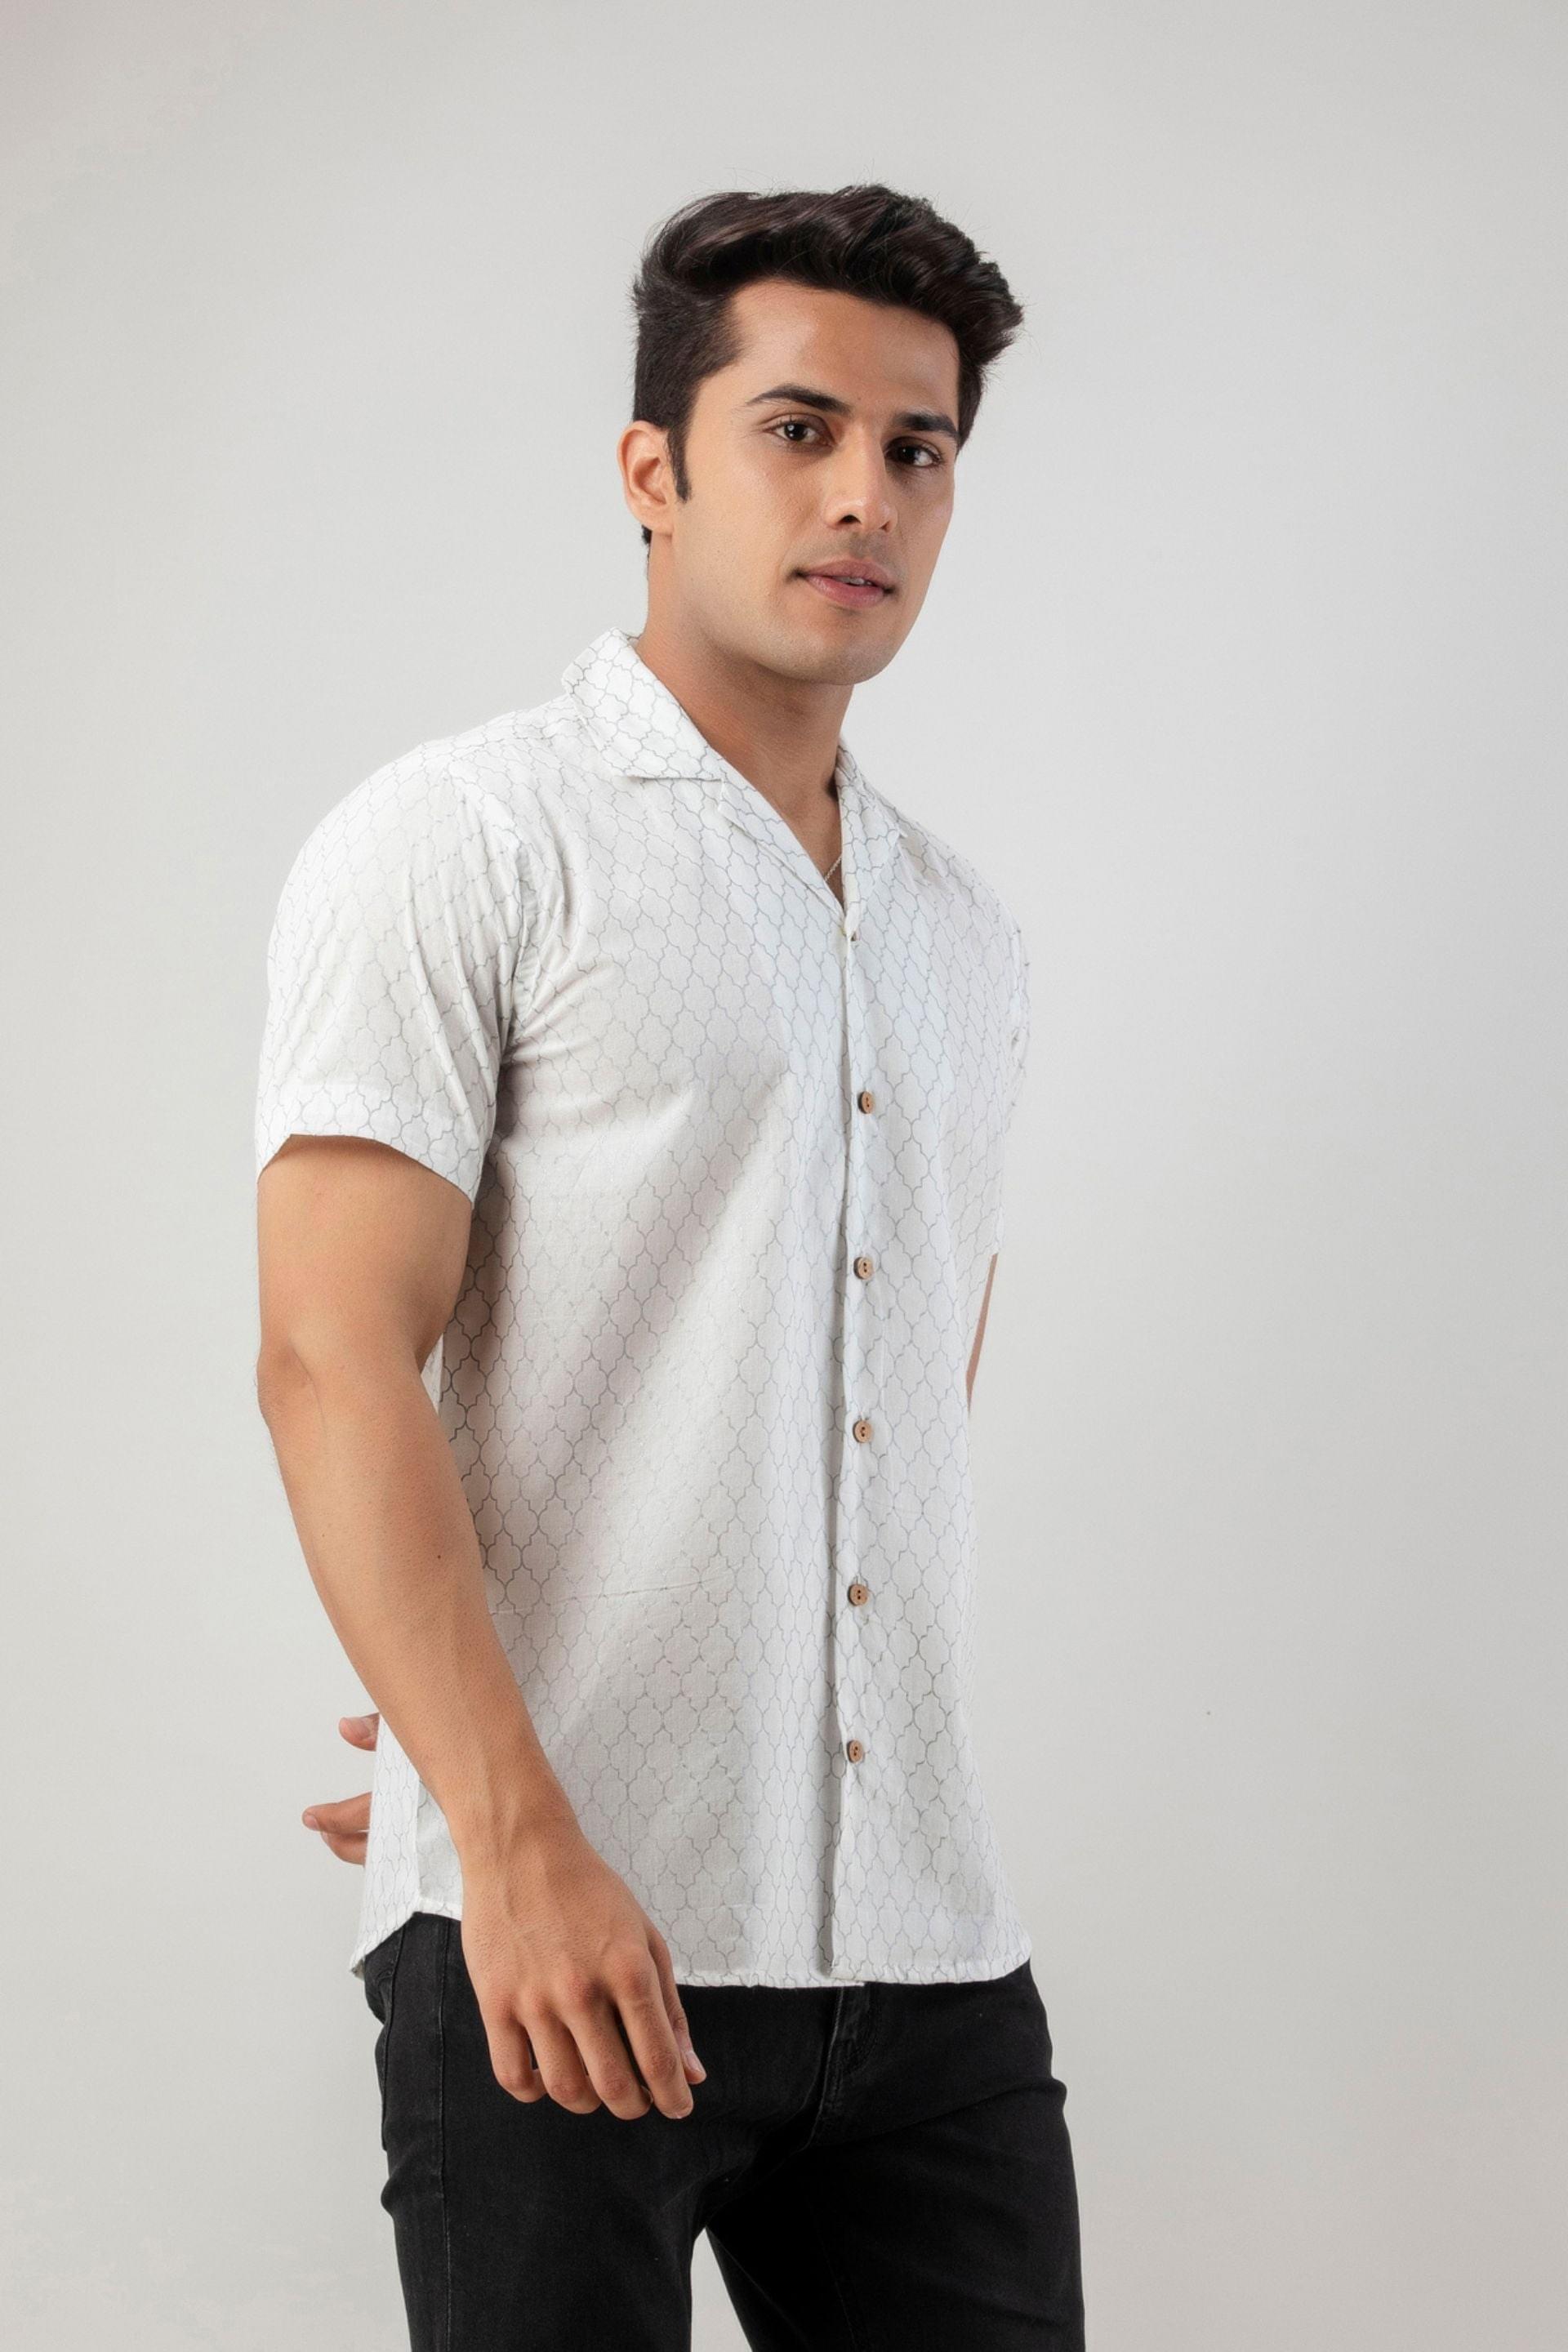 Firangi Yarn 100% Jaipuri Silver Jharokha Cotton Printed Cuban Collar Shirt- White